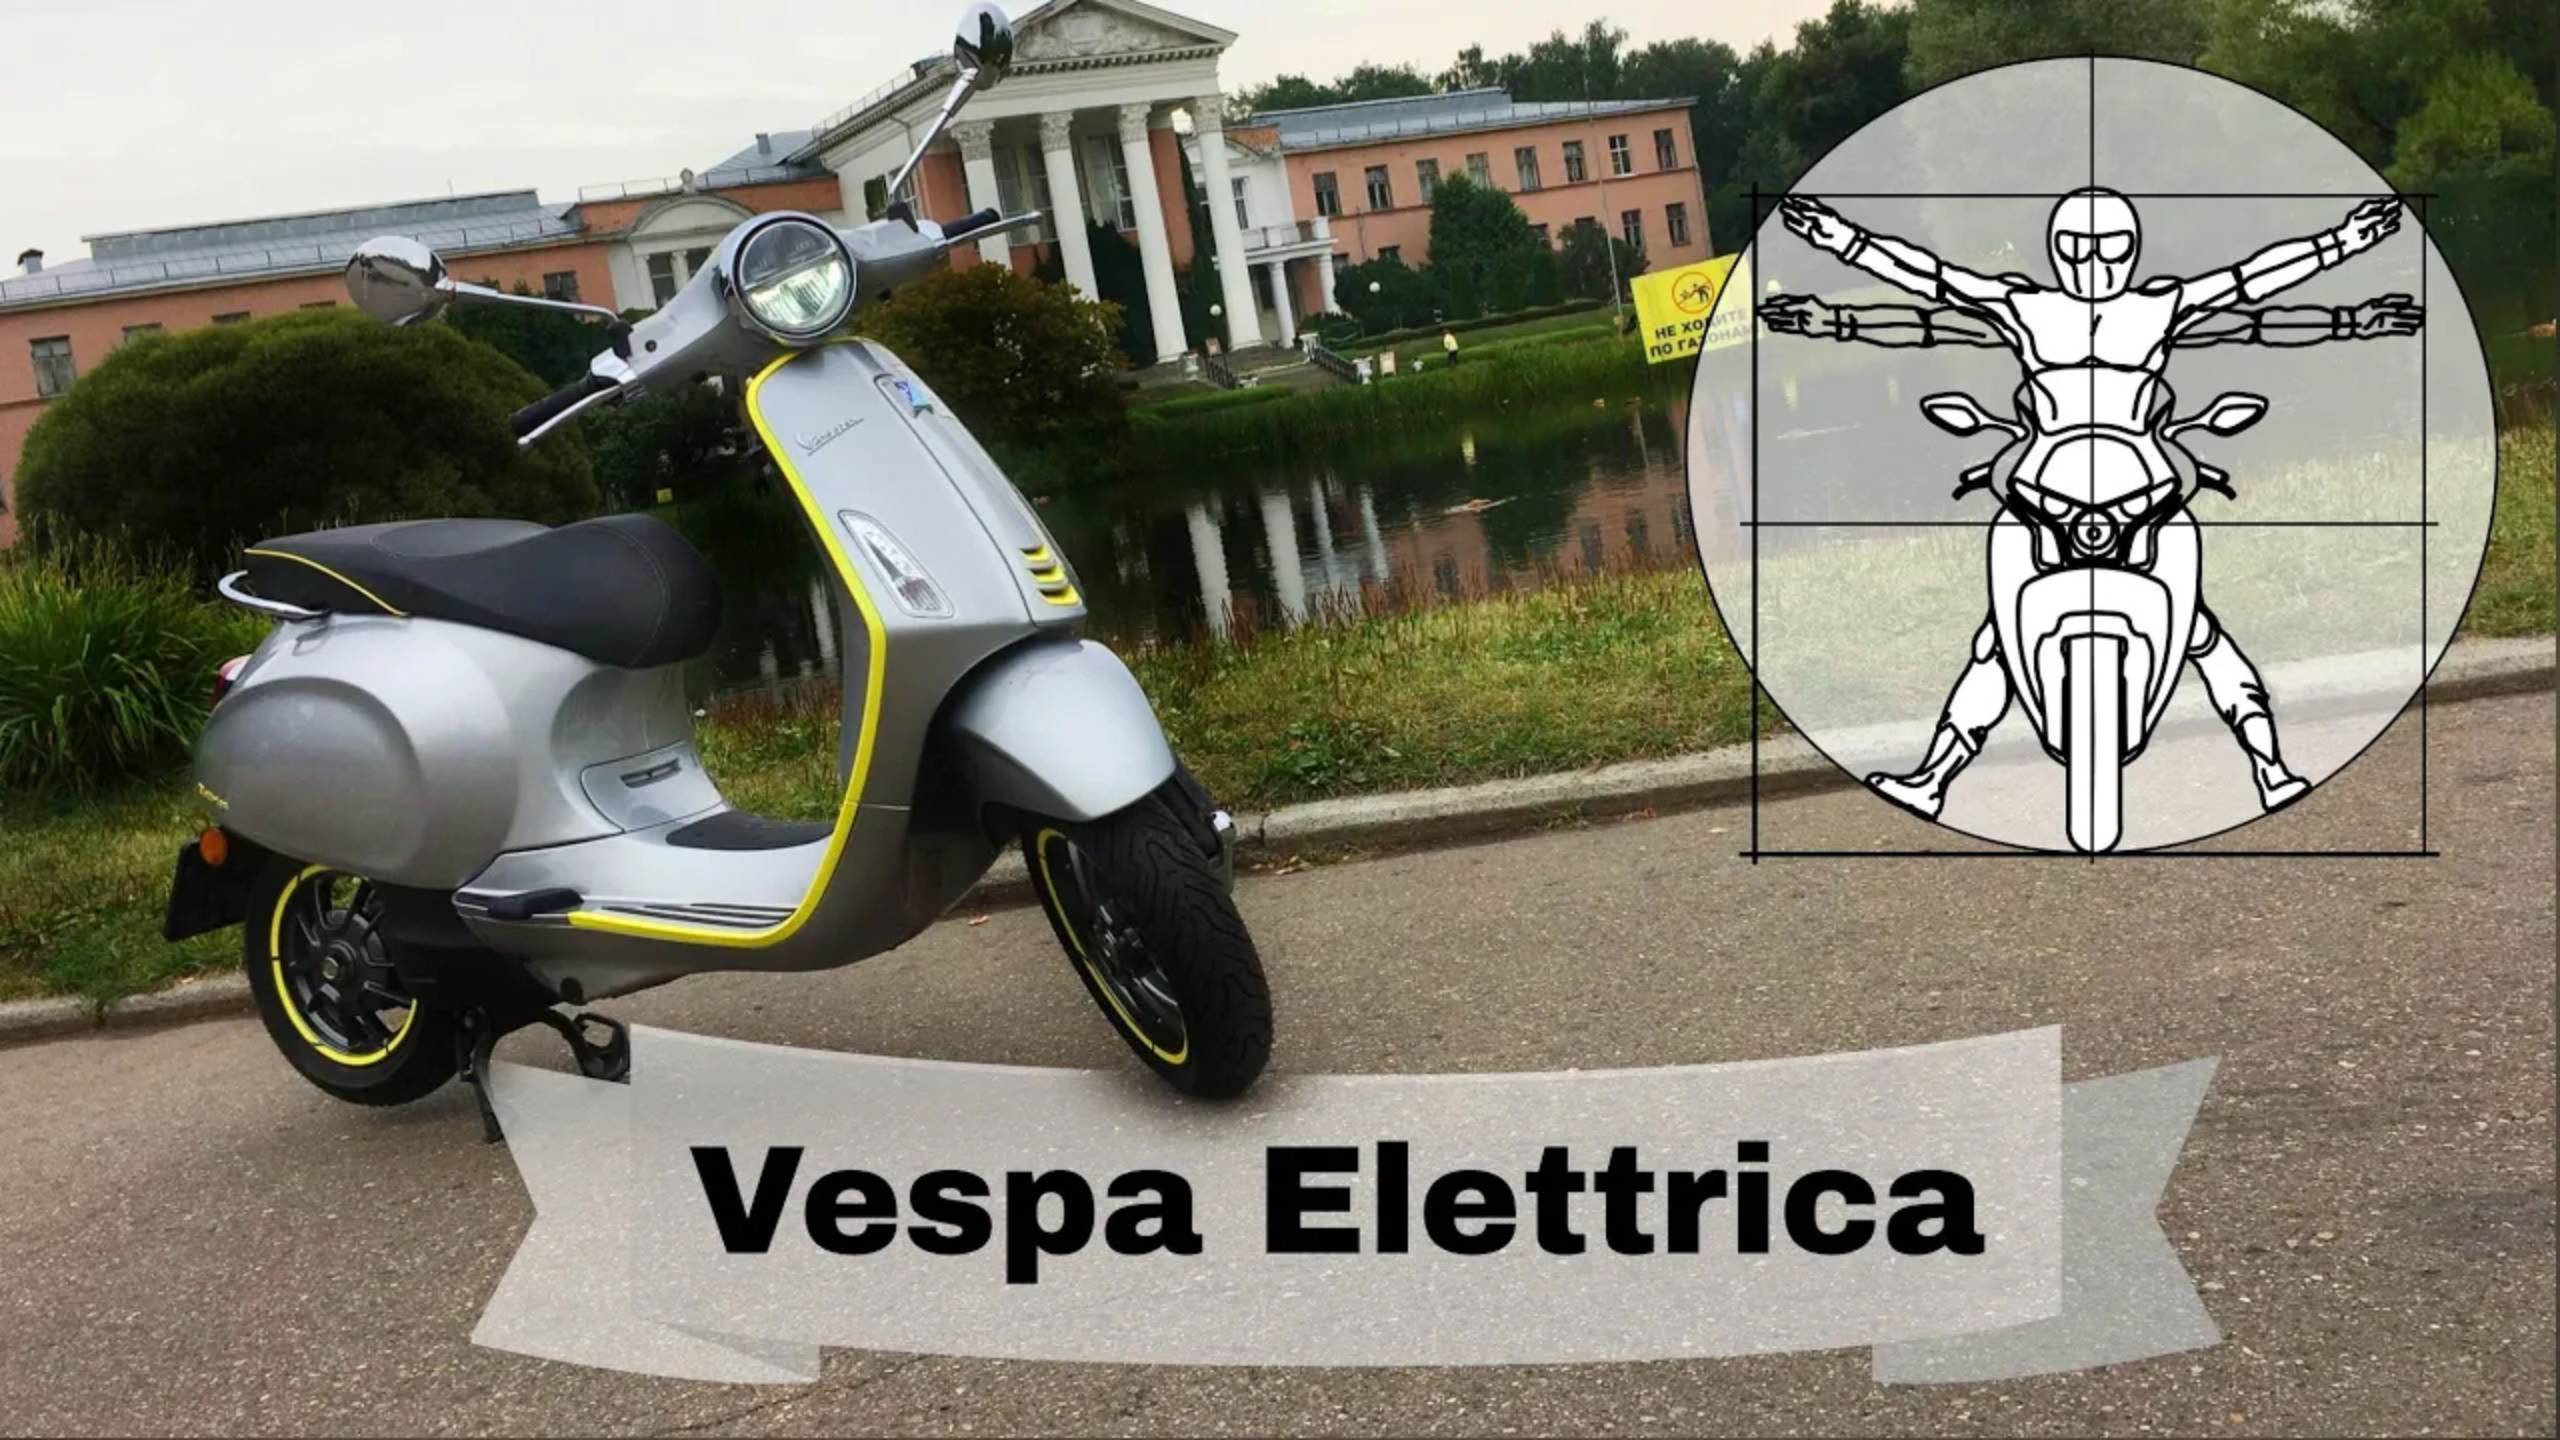 Vespa Elettrica: первый электроскутер легендарной марки! Почему так дорого?